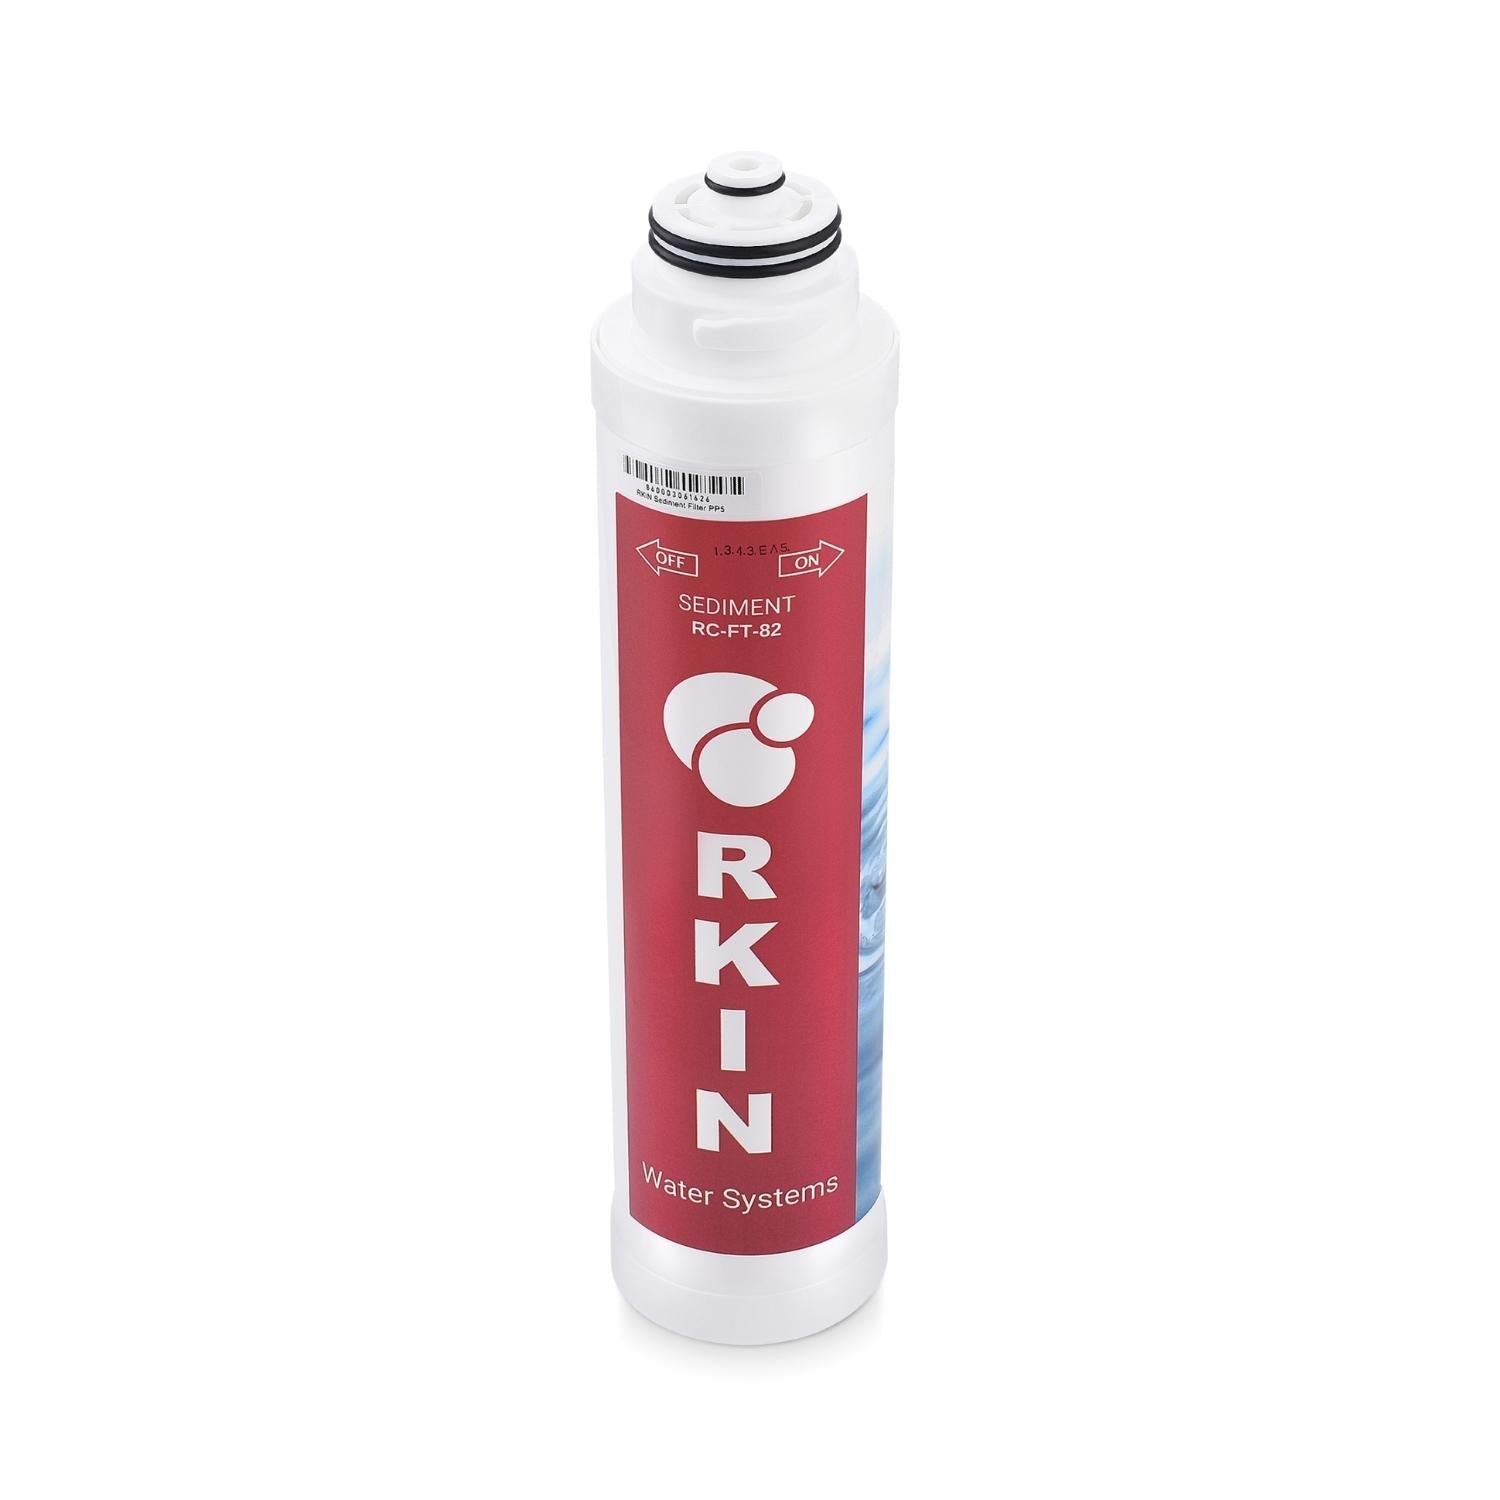 RKIN 5 Micron Sediment Filter